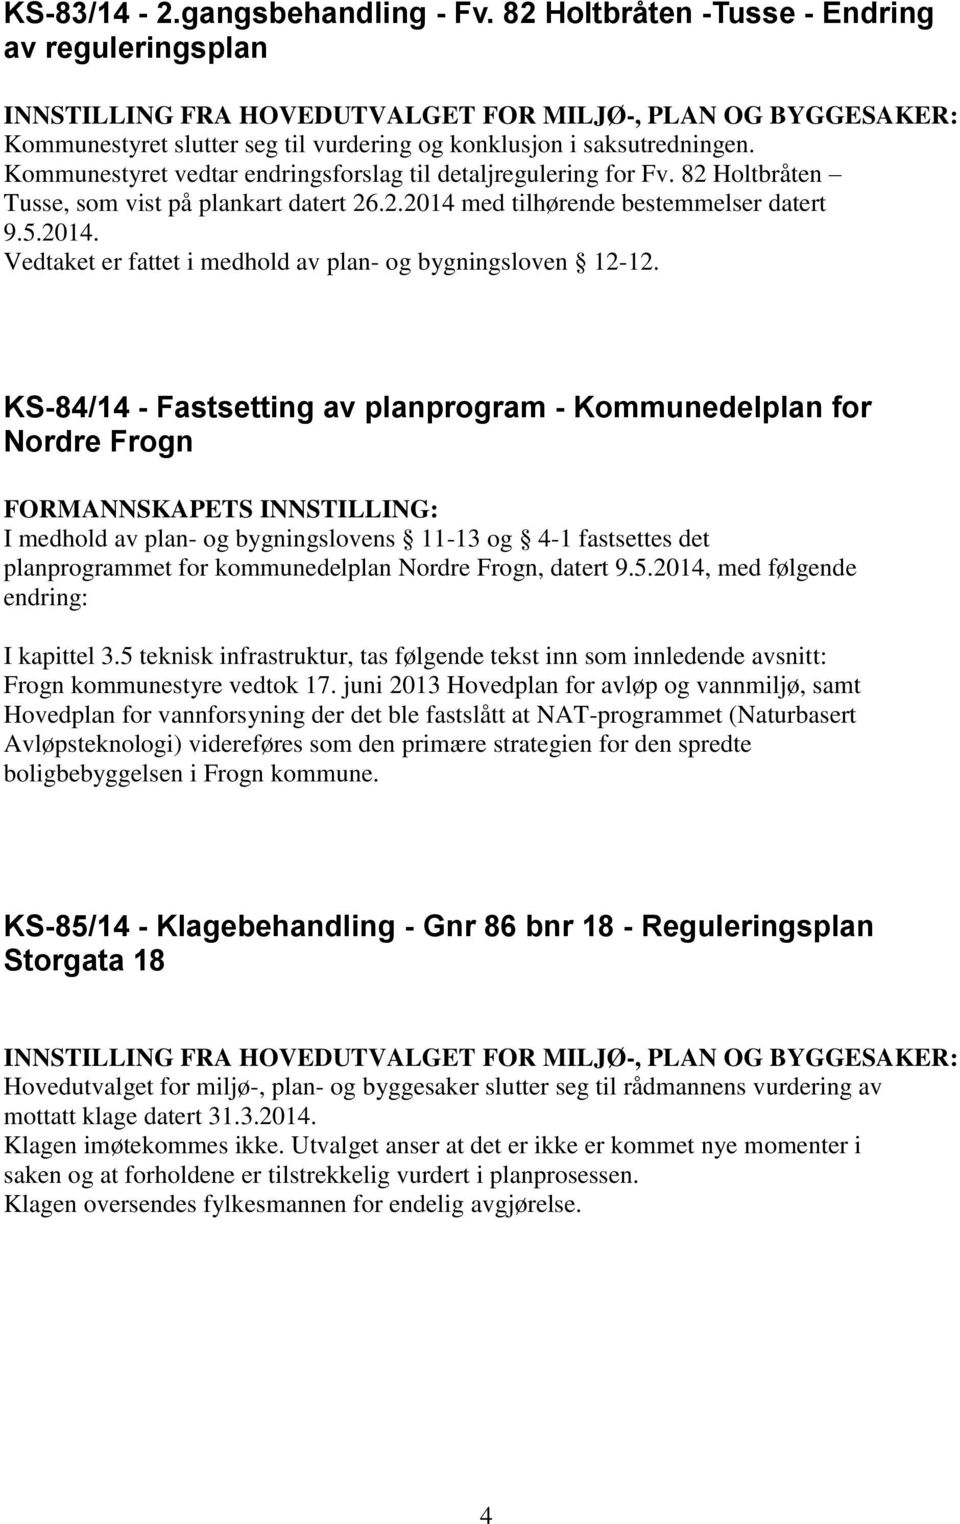 Kommunestyret vedtar endringsforslag til detaljregulering for Fv. 82 Holtbråten Tusse, som vist på plankart datert 26.2.2014 med tilhørende bestemmelser datert 9.5.2014. Vedtaket er fattet i medhold av plan- og bygningsloven 12-12.